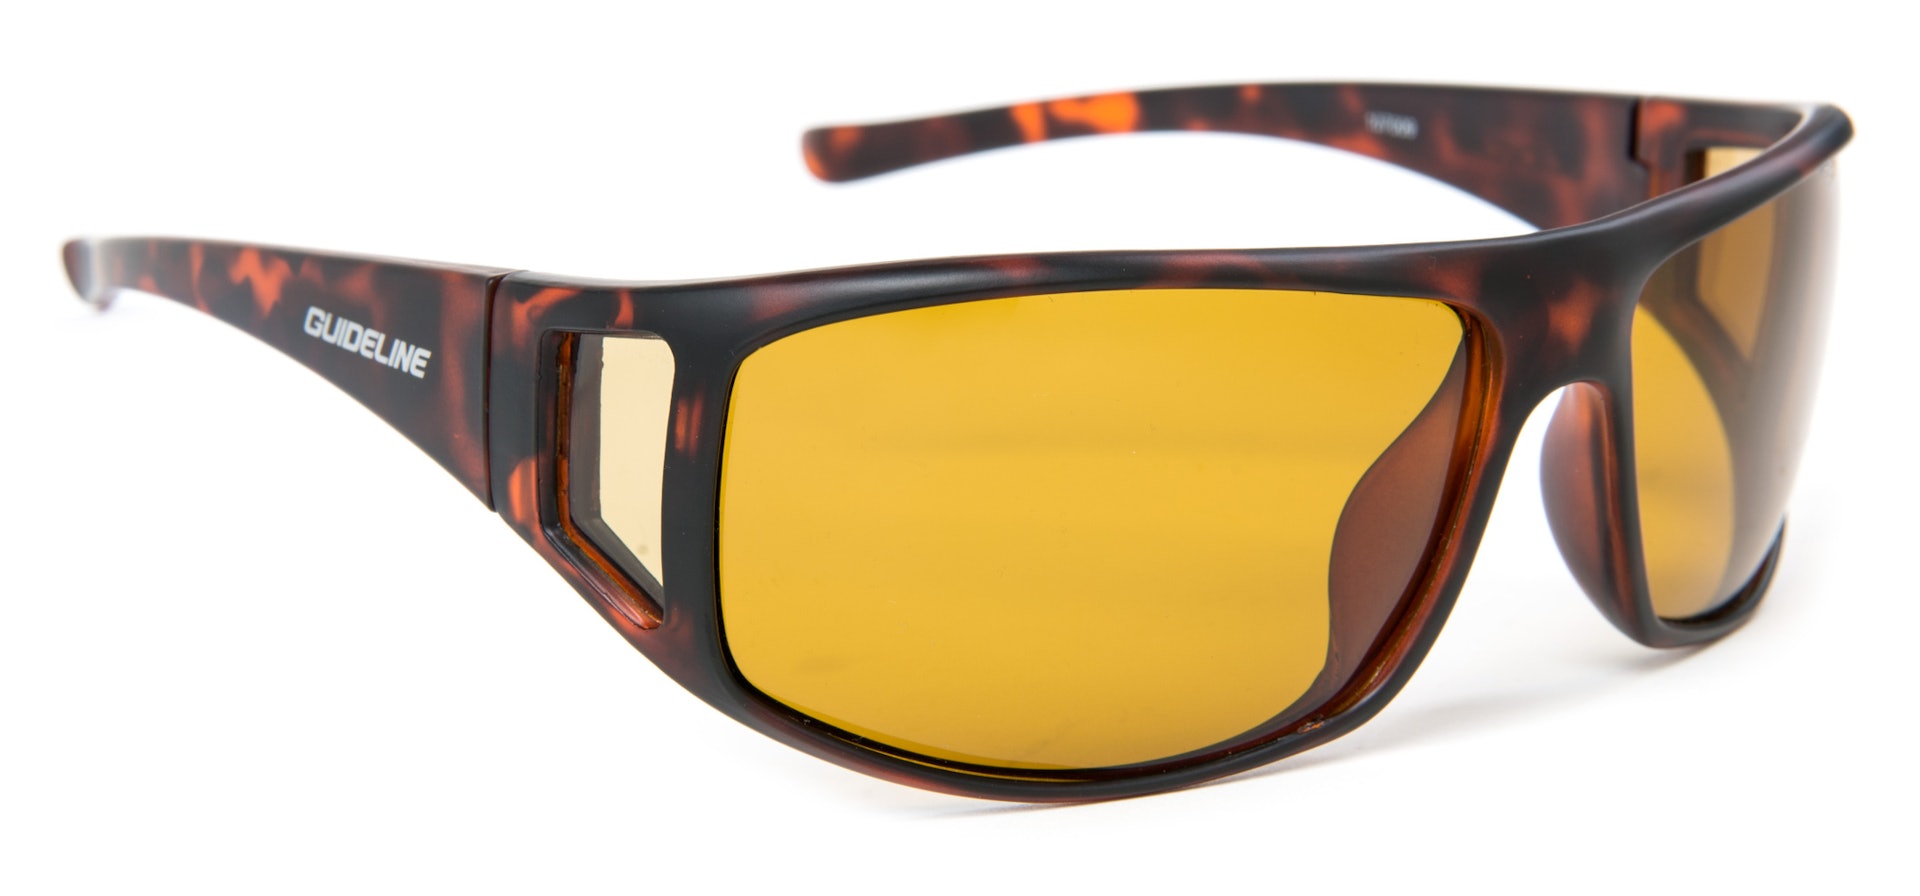 Tactical Sunglasses - Yellow Lens (bild 1 av 1)